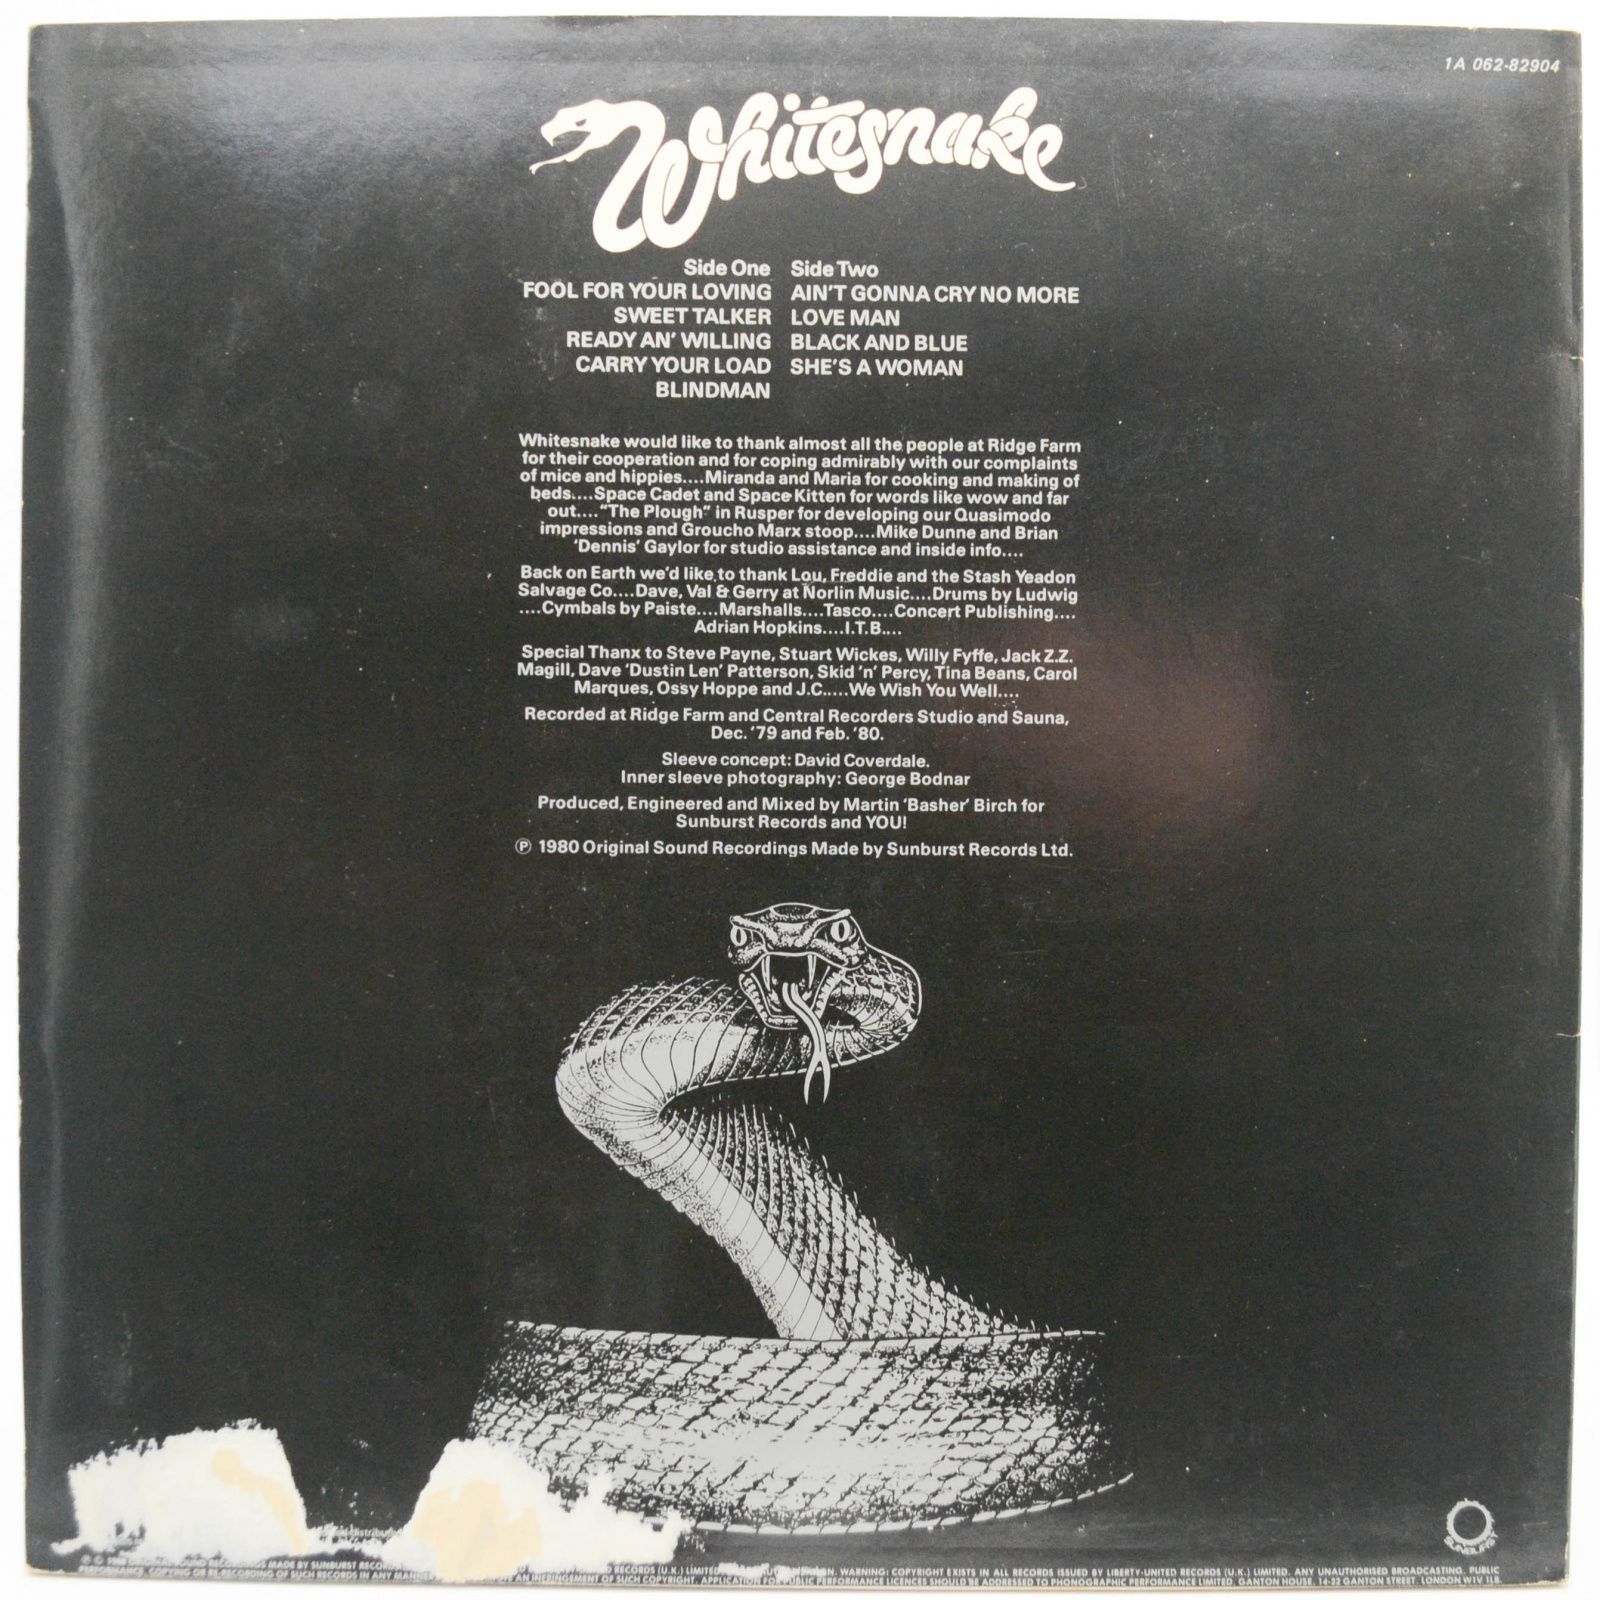 Whitesnake — Ready An' Willing, 1980